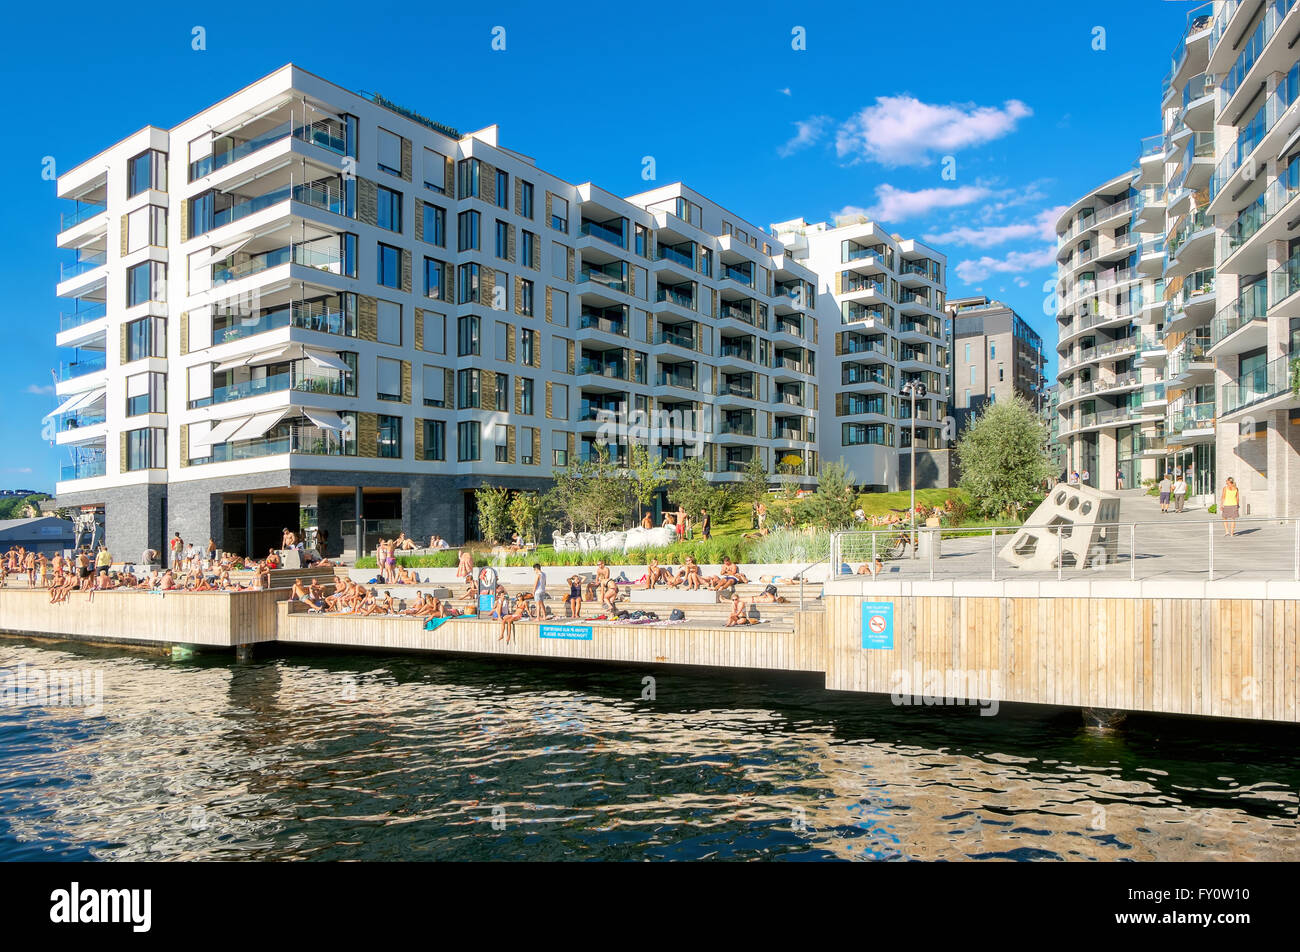 OSLO, Norwegen - 13 AUGUST: Umwelt im modernen Stadtteil mit Sonnenbaden Jugendlichen am künstlichen Strand in warmen Tag am 13. August Stockfoto